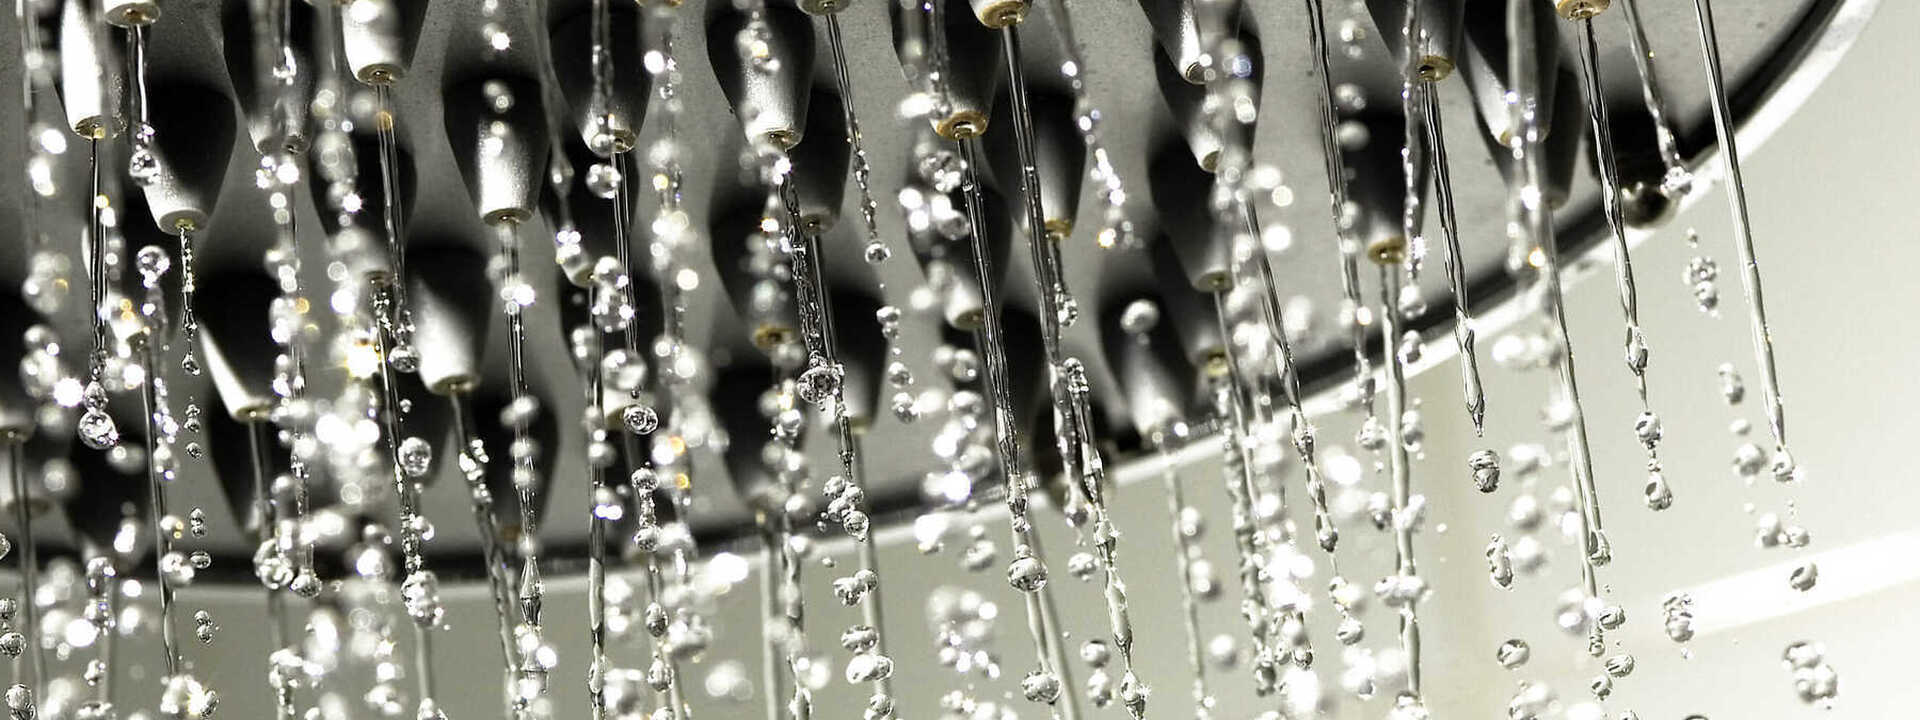 Kan je douchen met regenwater?